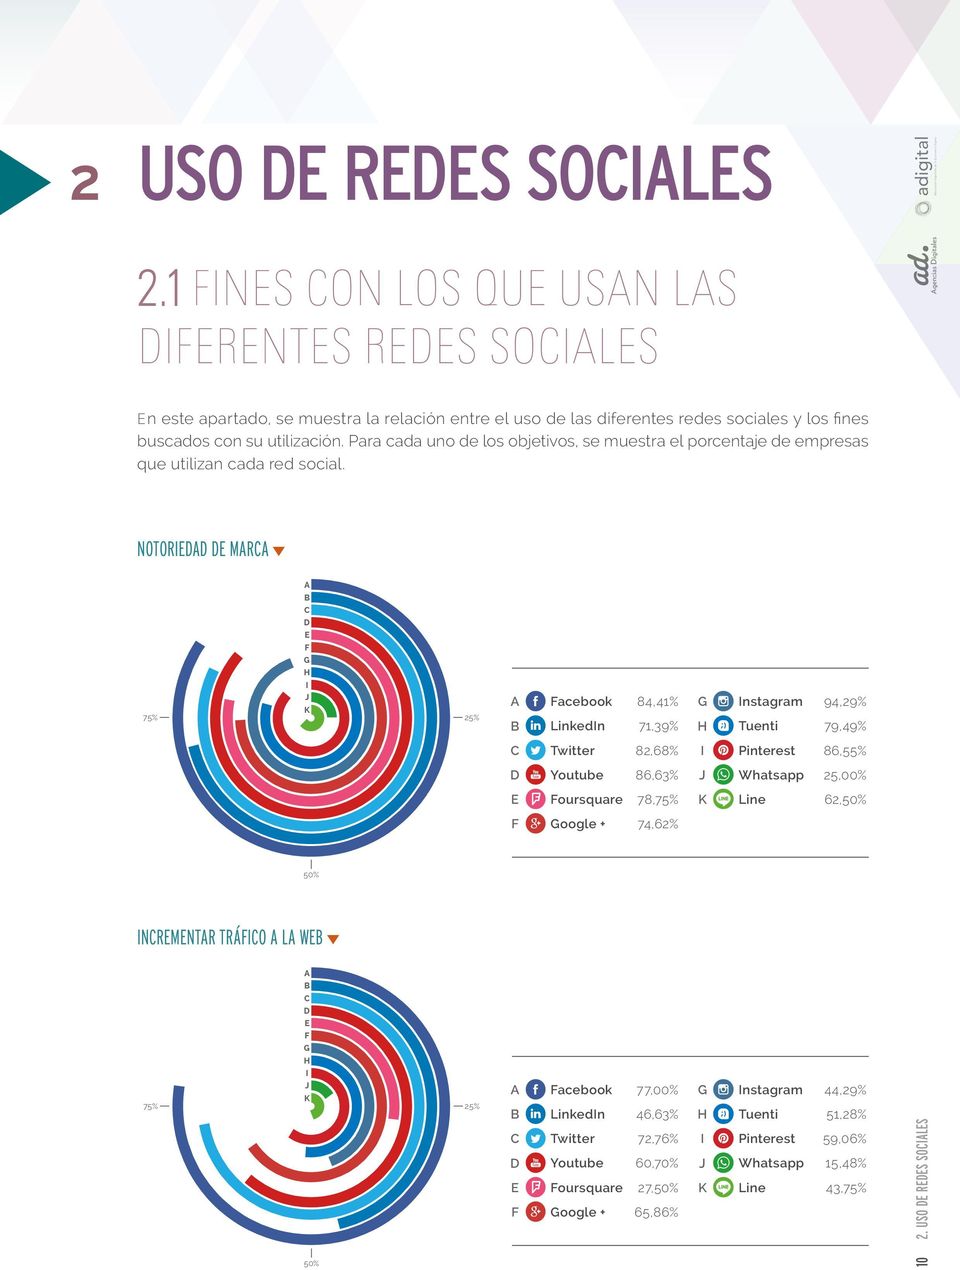 Para cada uno de los objetivos, se muestra el porcentaje de empresas que utilizan cada red social.